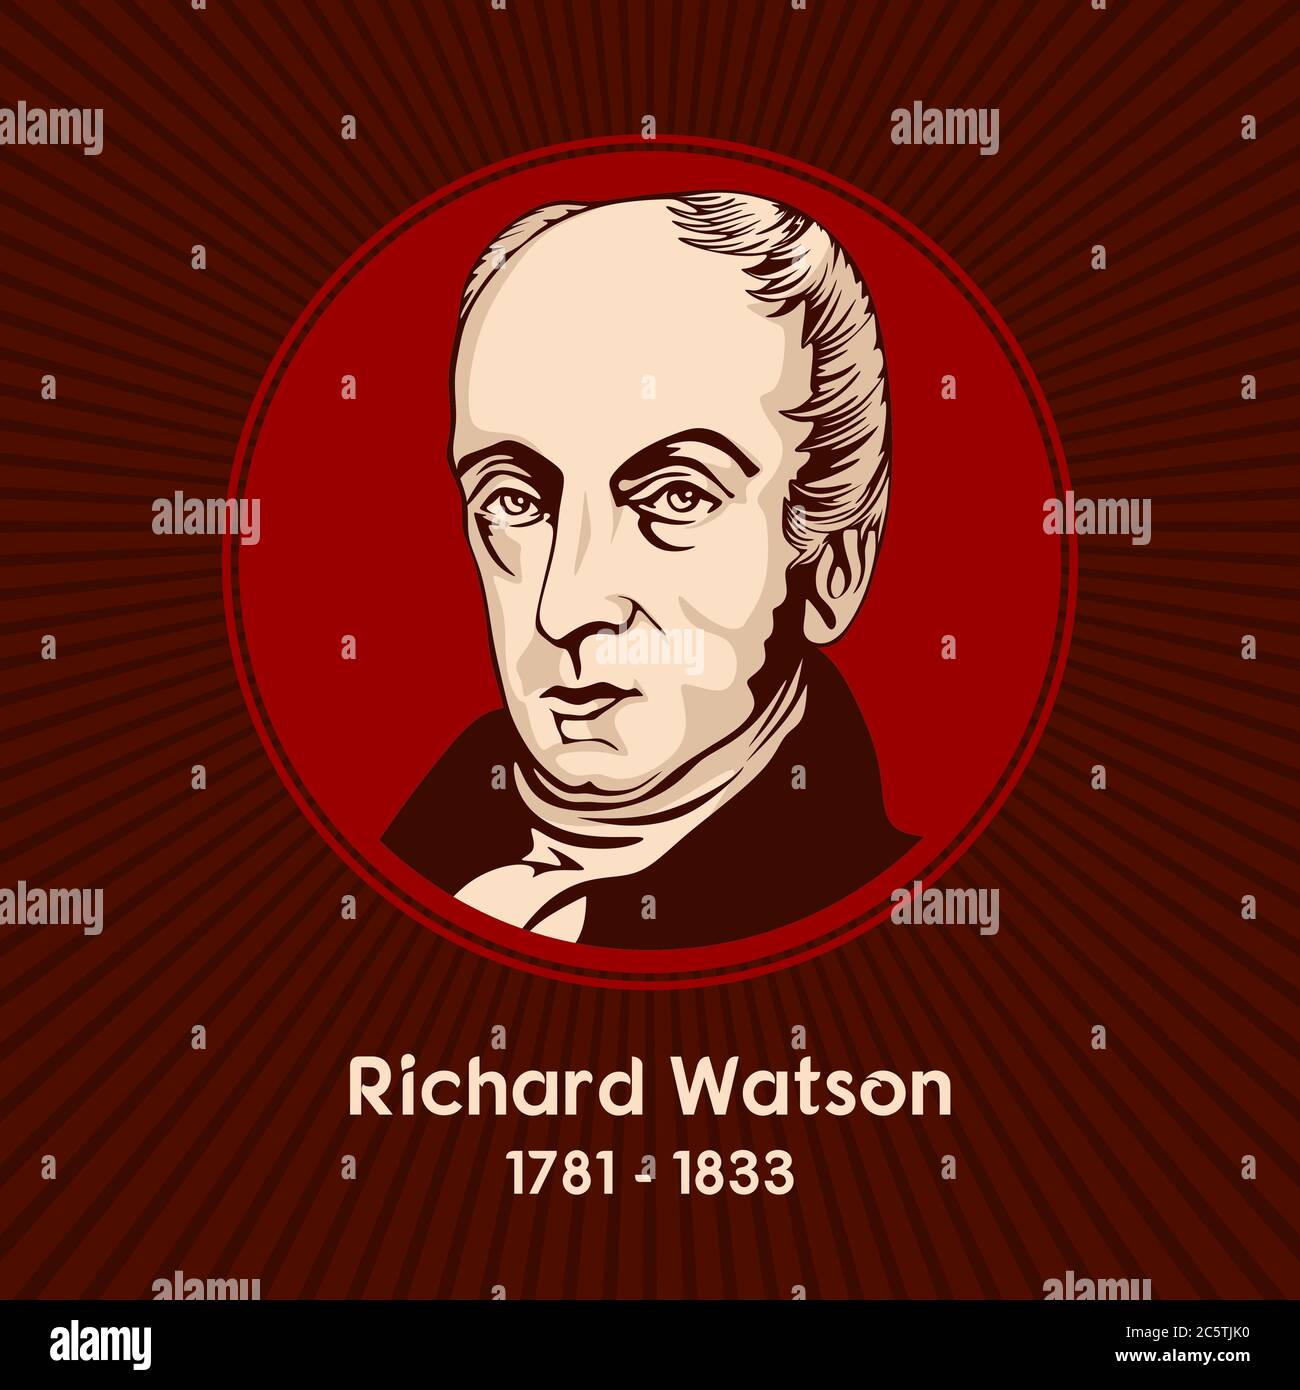 Richard Watson (1781 - 1833) war ein britischer Methodisten Theologe, war eine der wichtigsten Persönlichkeiten im 19. Jahrhundert Methodisten. Stock Vektor